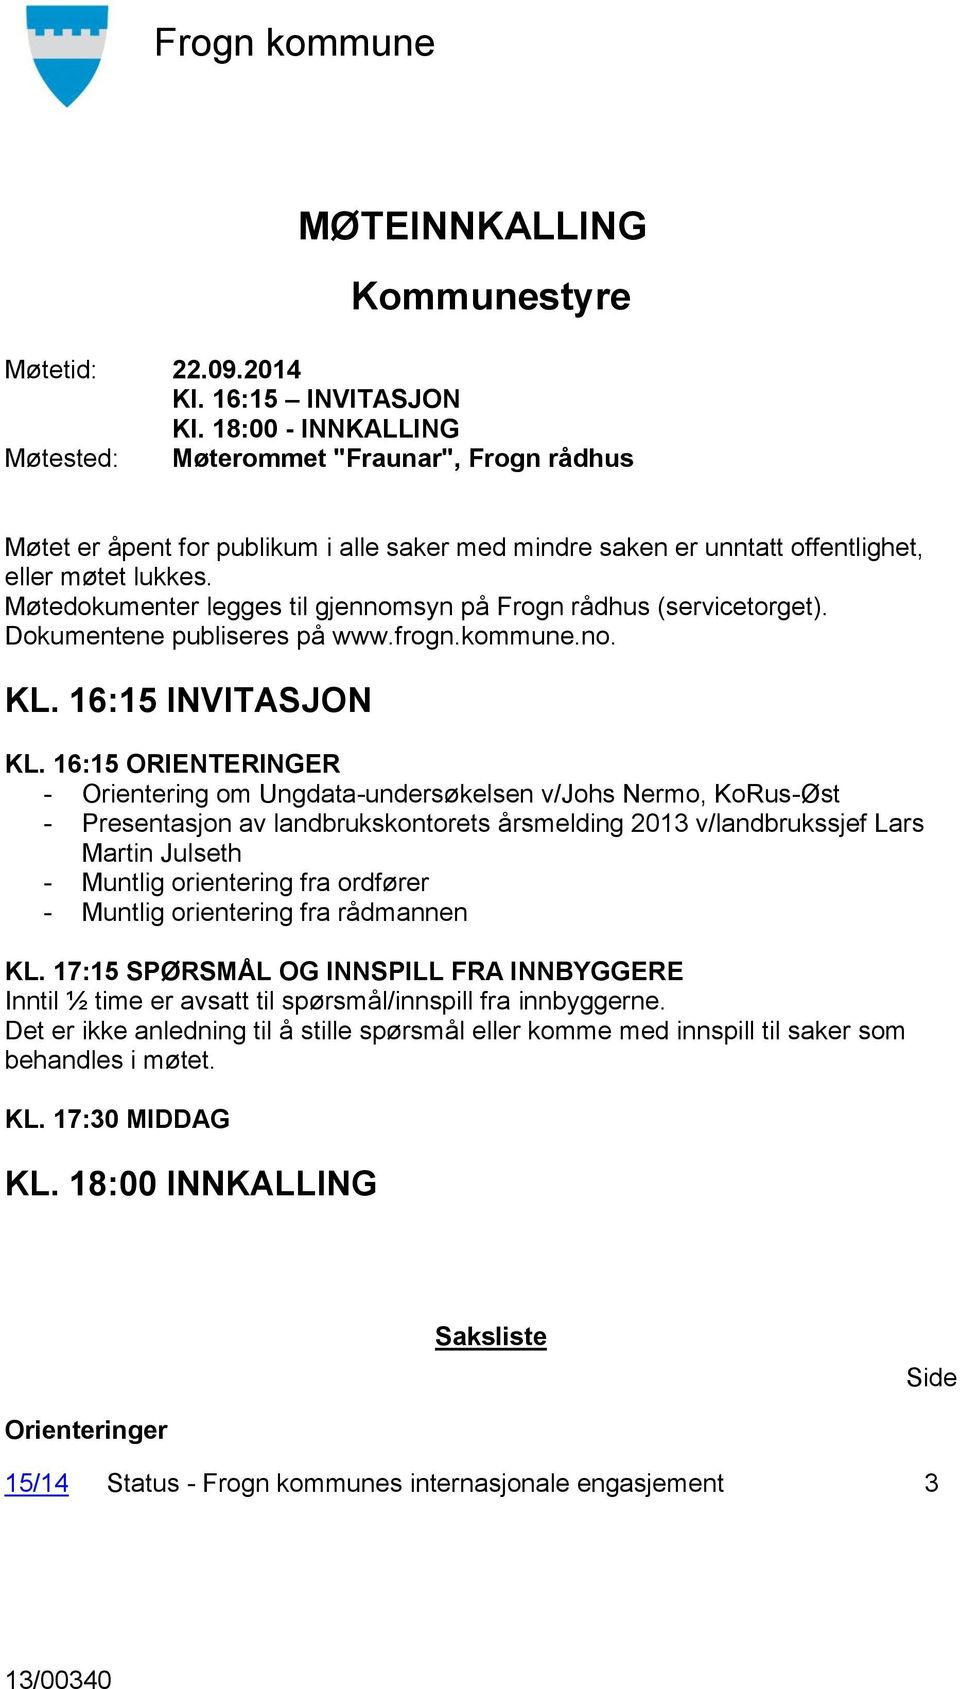 Møtedokumenter legges til gjennomsyn på Frogn rådhus (servicetorget). Dokumentene publiseres på www.frogn.kommune.no. KL. 16:15 INVITASJON KL.